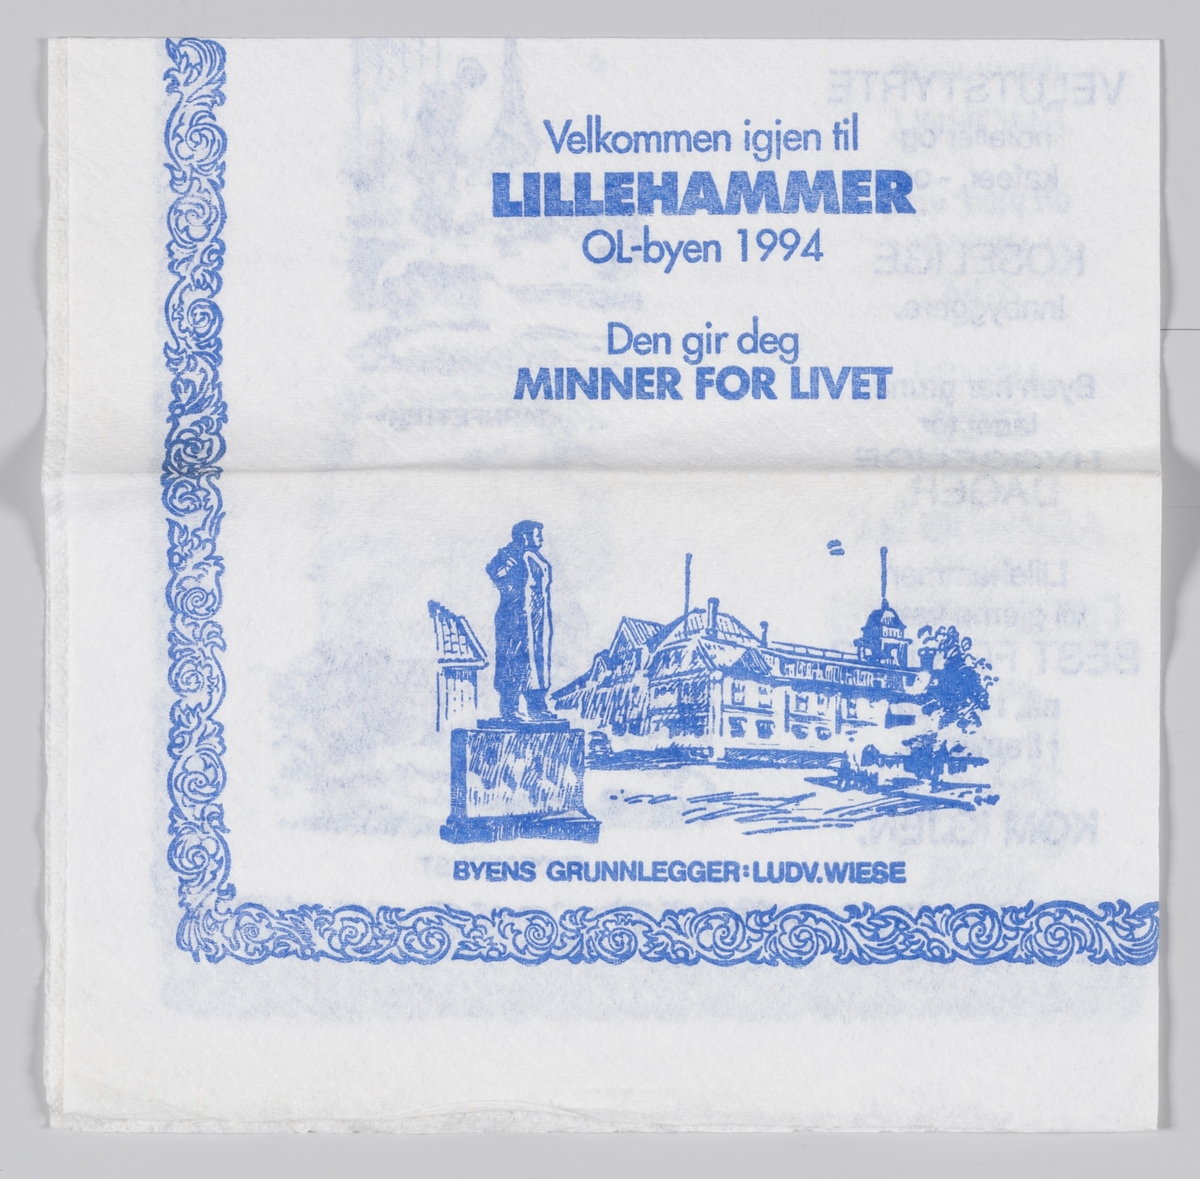 En tegning av en statue av Lillehammers grunnlegger og Storgaten, Maihaugen; "Tårnpetter" og Stortorget og beskrivelse og reklame for OL-byen Lillehammer.